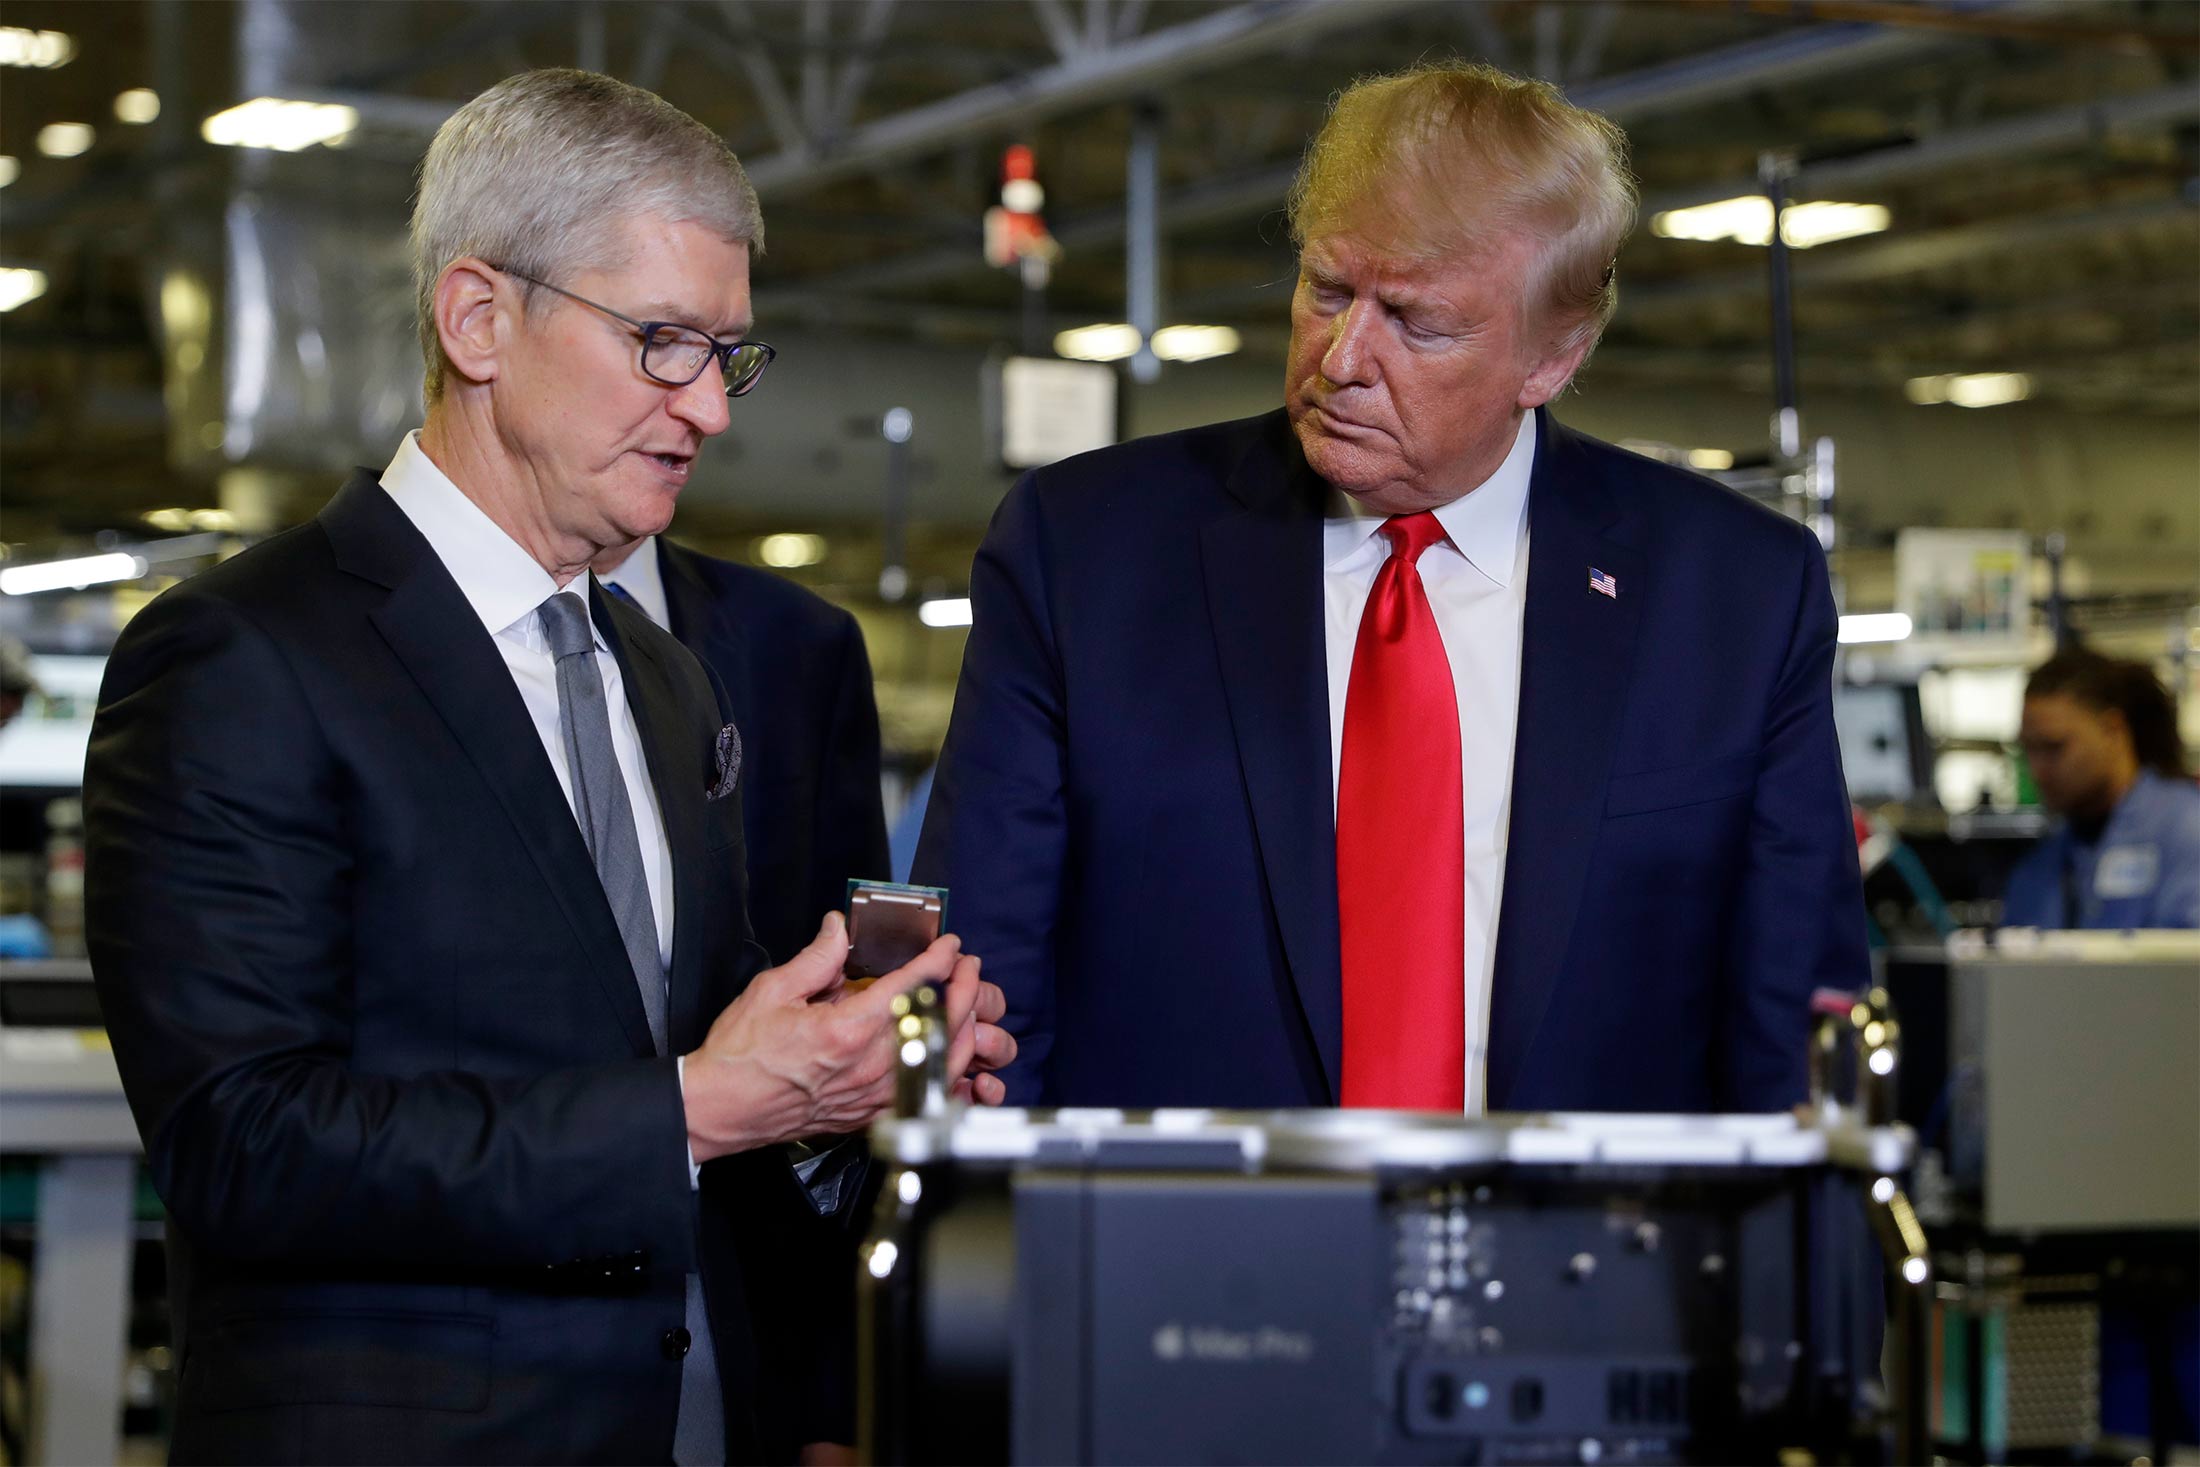 President Trump külastas Texase Apple'i tehast - ja propageeris mõnda asja, mis polnud reaalne